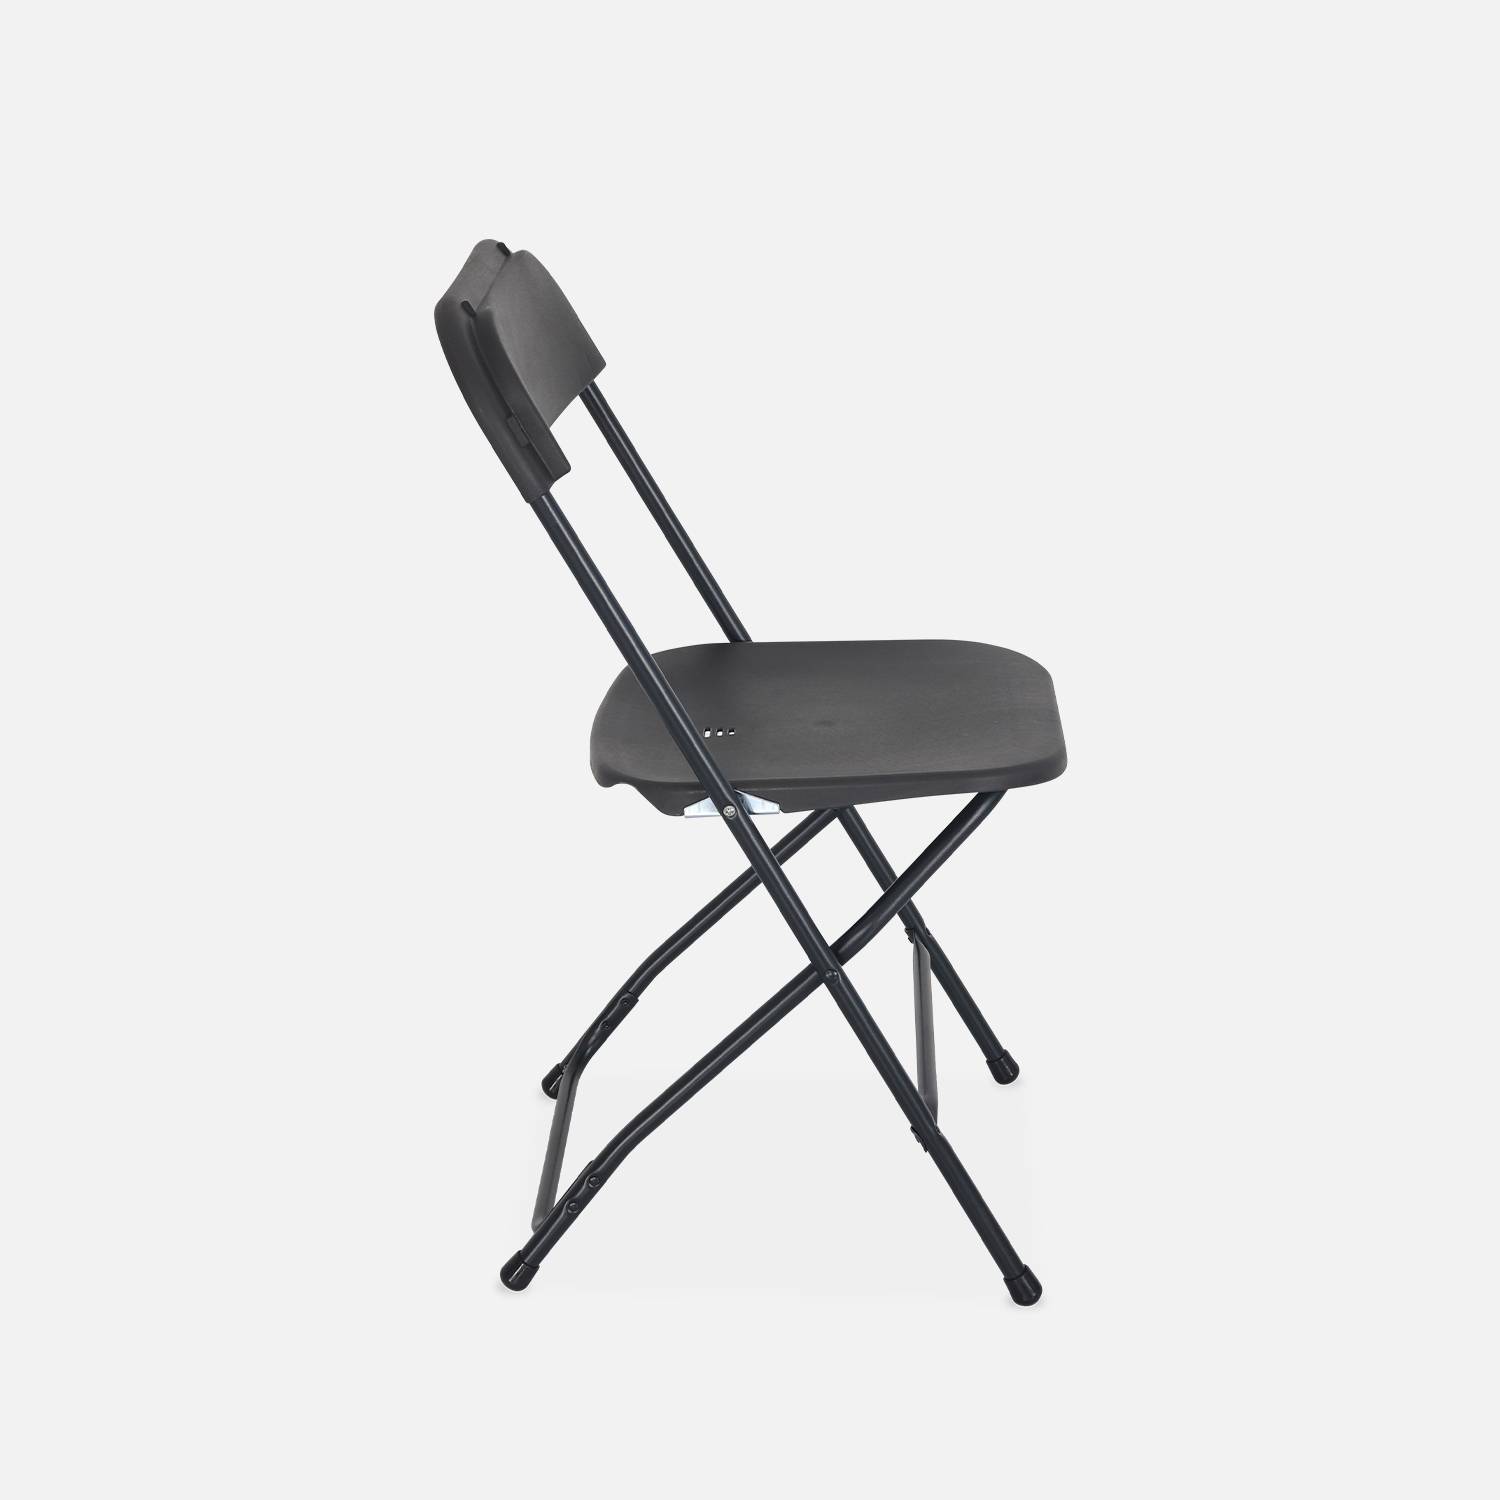  Chaises pliantes - Fiesta - 6 chaises latérales en plastique et métal gris foncé Photo5